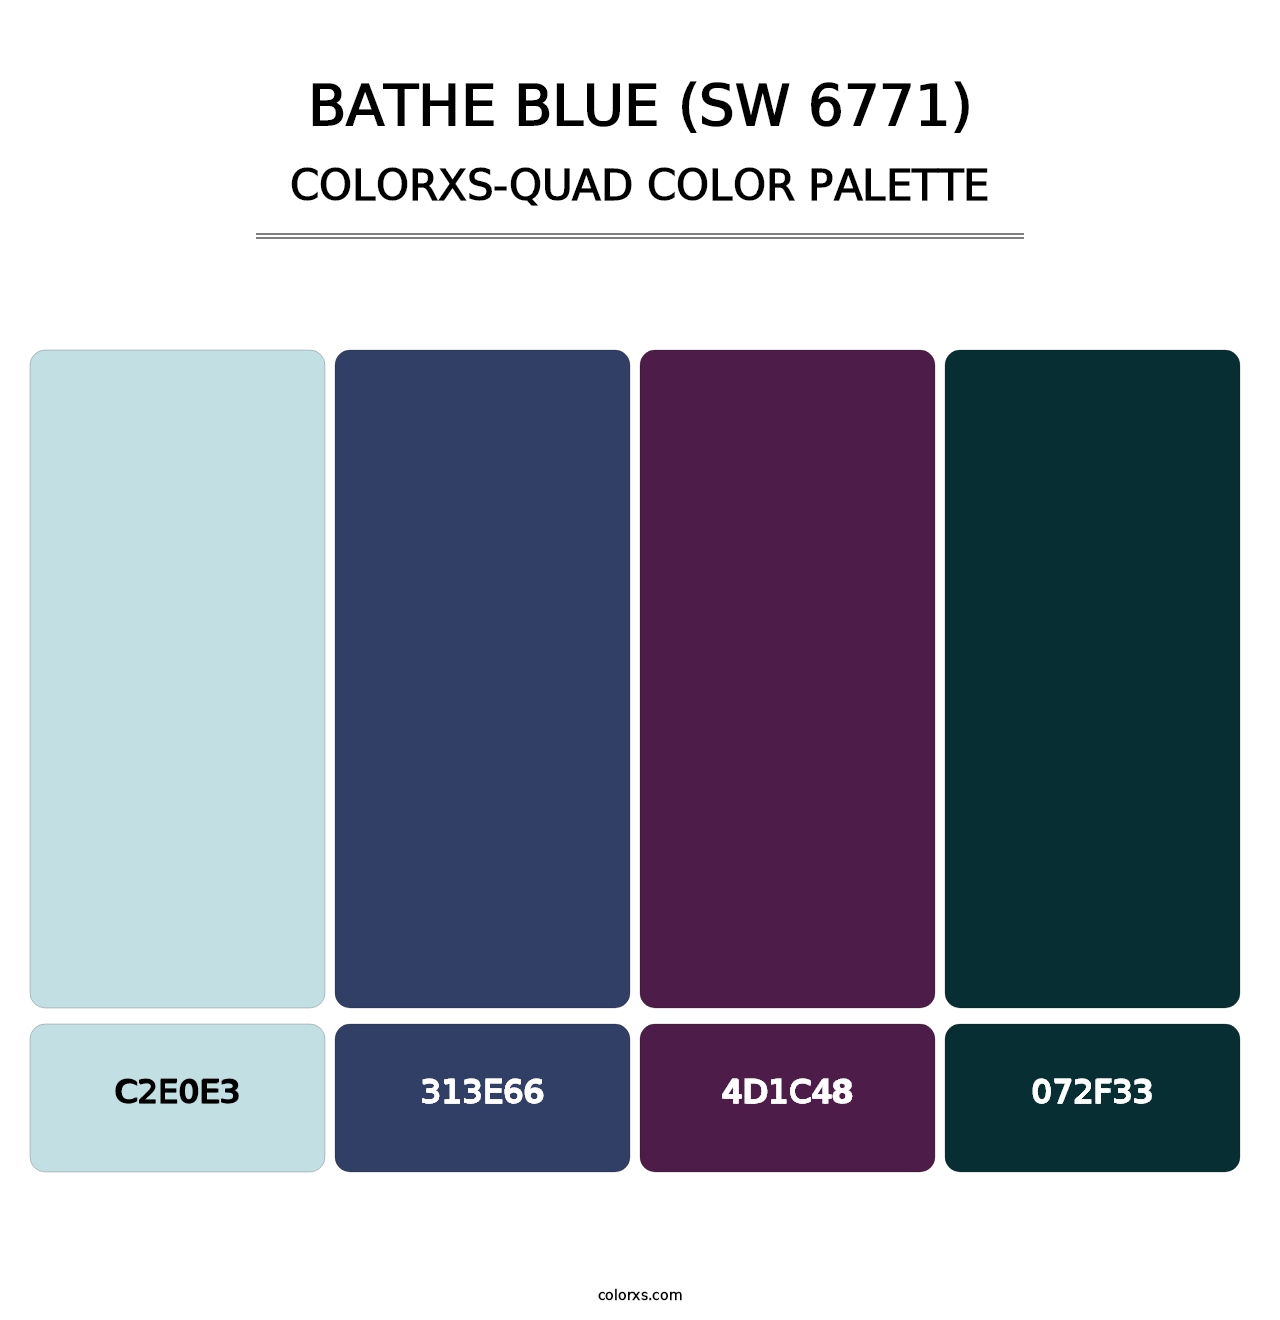 Bathe Blue (SW 6771) - Colorxs Quad Palette